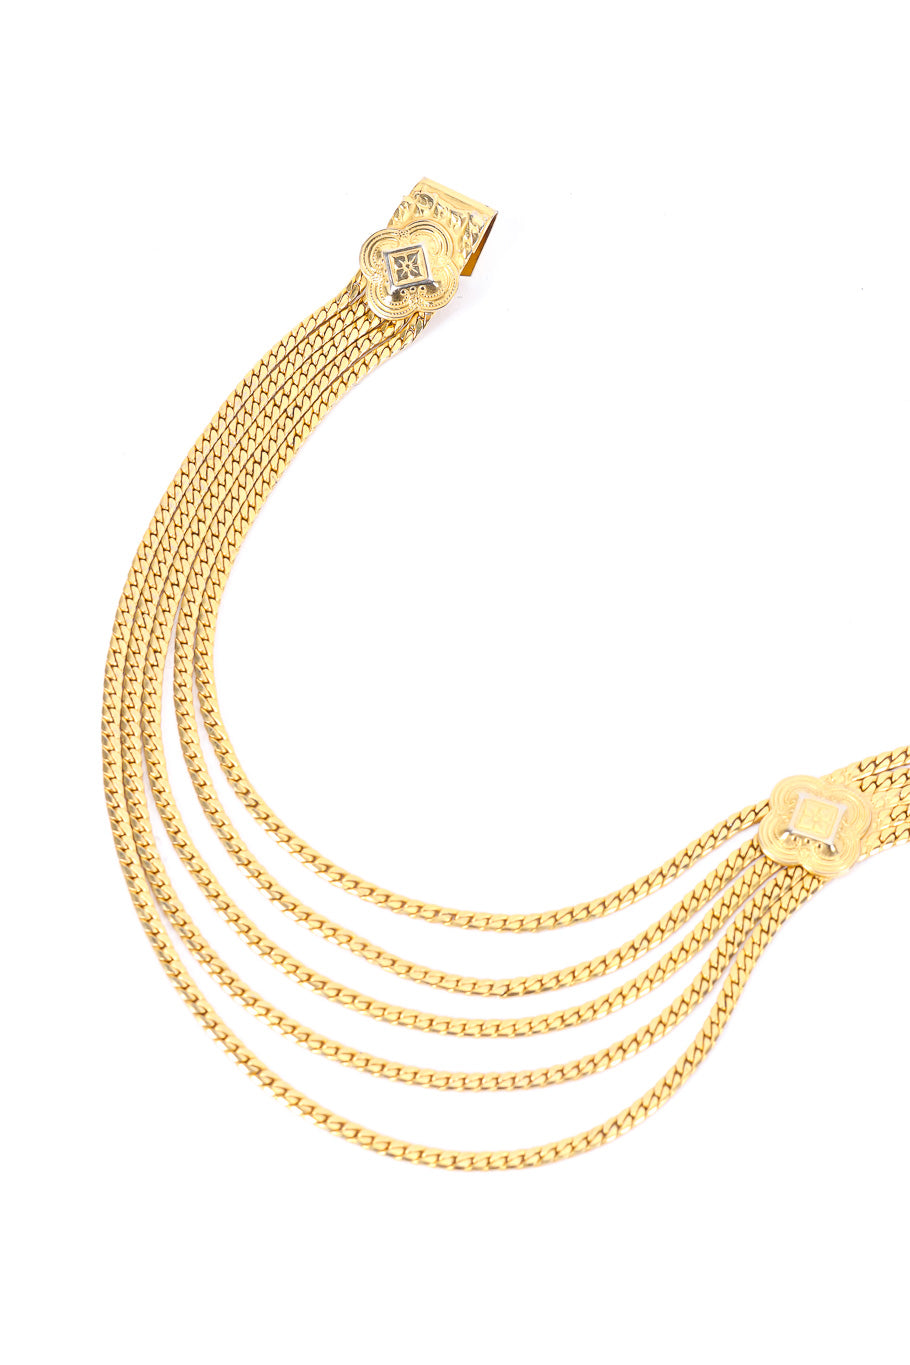 Christian Dior draped waist chain detail @recessla